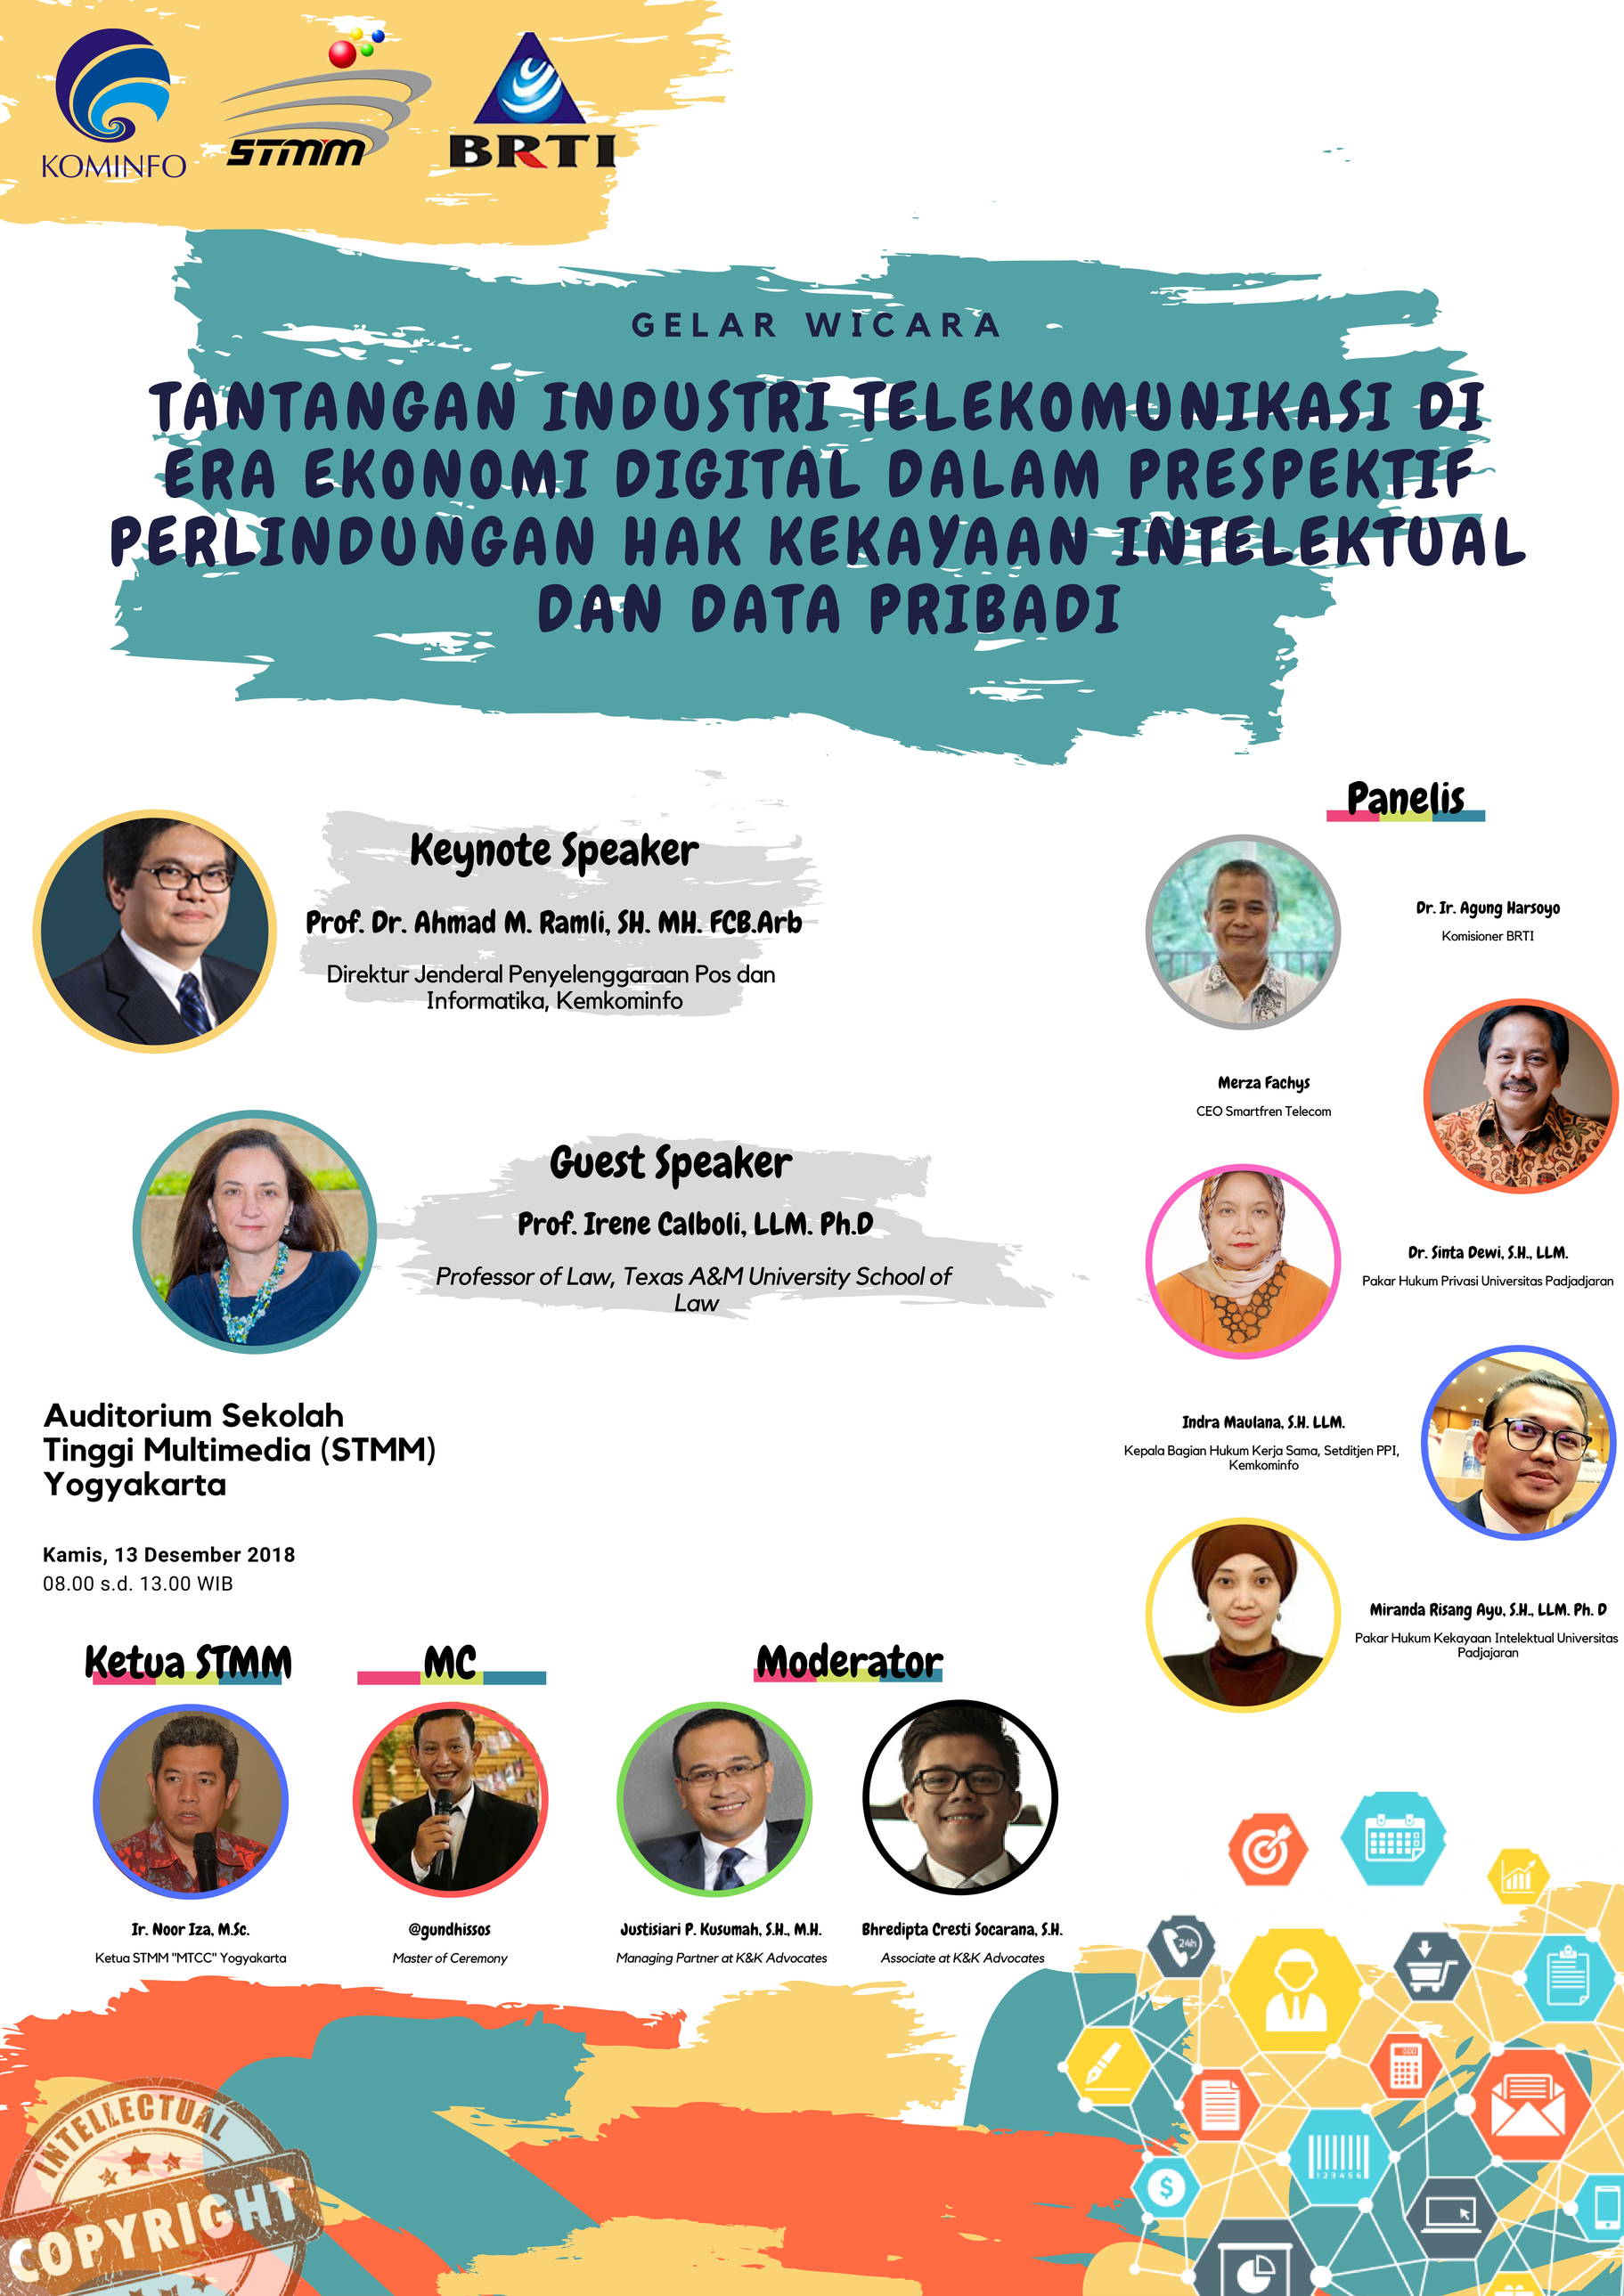 Gelar Wicara Tantangan Industri Telekomunikasi di Era Ekonomi Digital Dalam Prespektif Perlindungan HAKI dan Data Pribadi